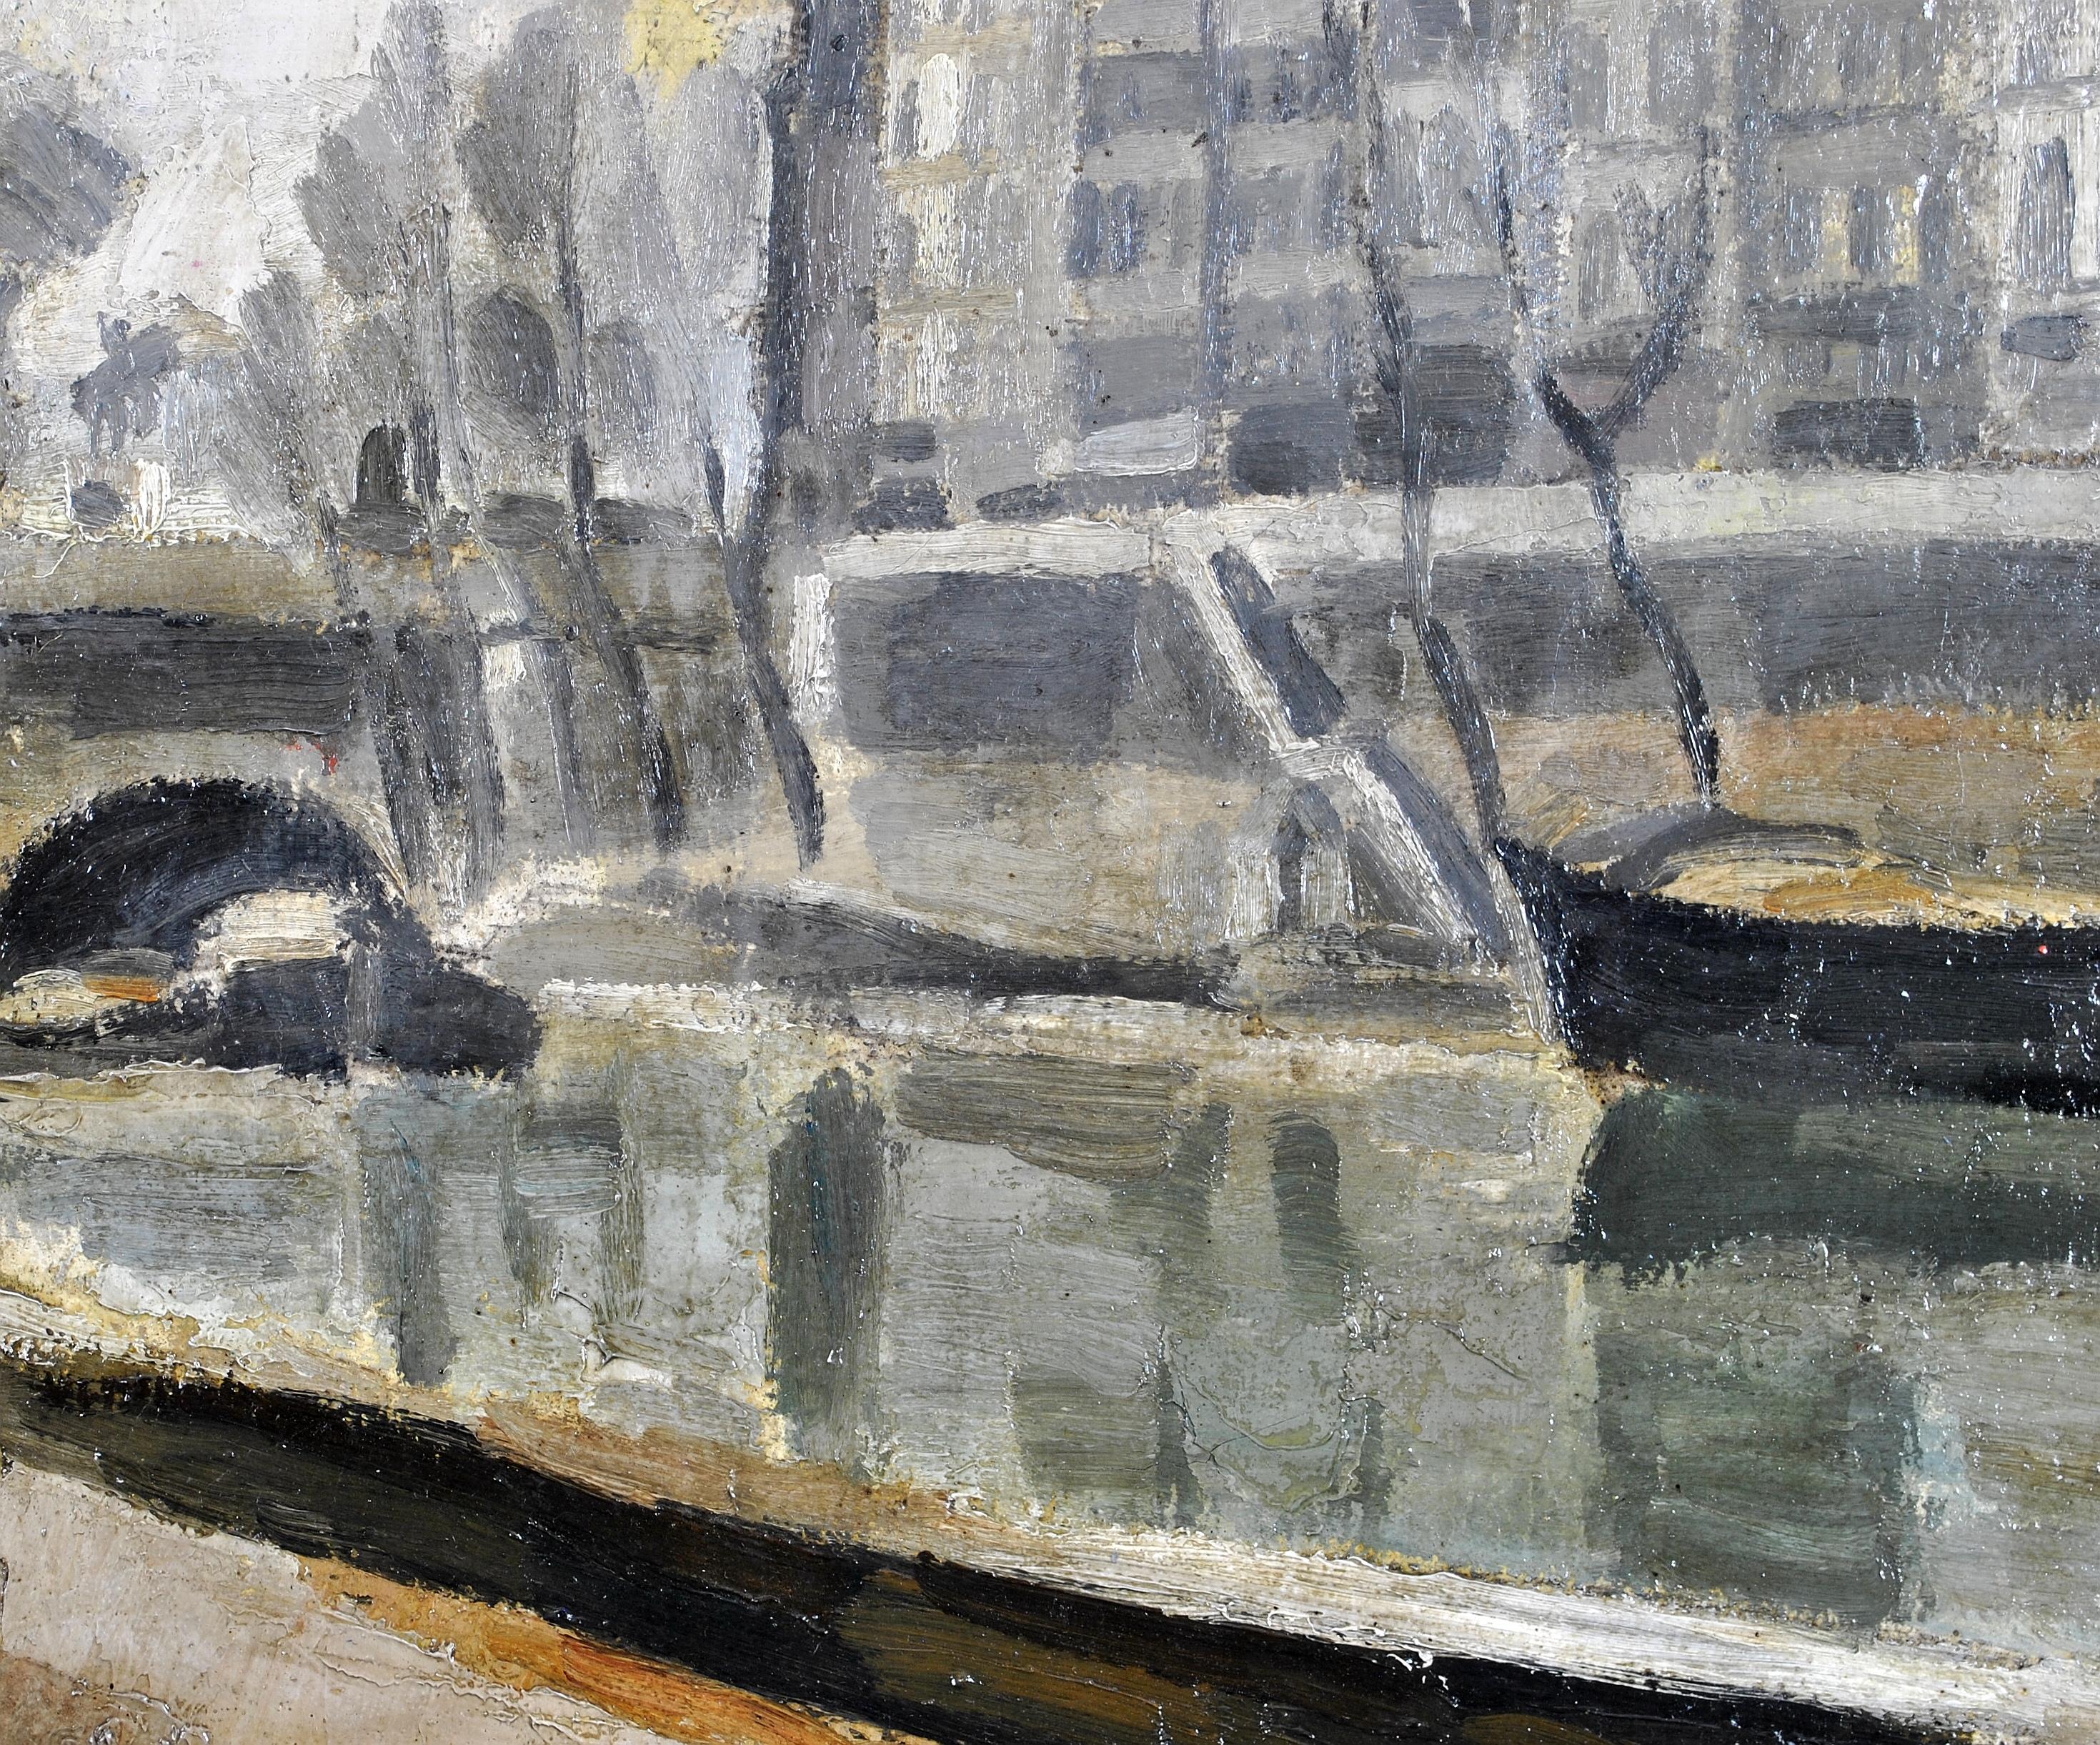 Ein wunderschönes postimpressionistisches Ölgemälde von Georges Pacouil aus dem Jahr 1925, das die Ufer der Seine in Paris darstellt. Hervorragende Qualität der frühen Arbeiten dieses interessanten französischen Künstlers. Unten rechts signiert